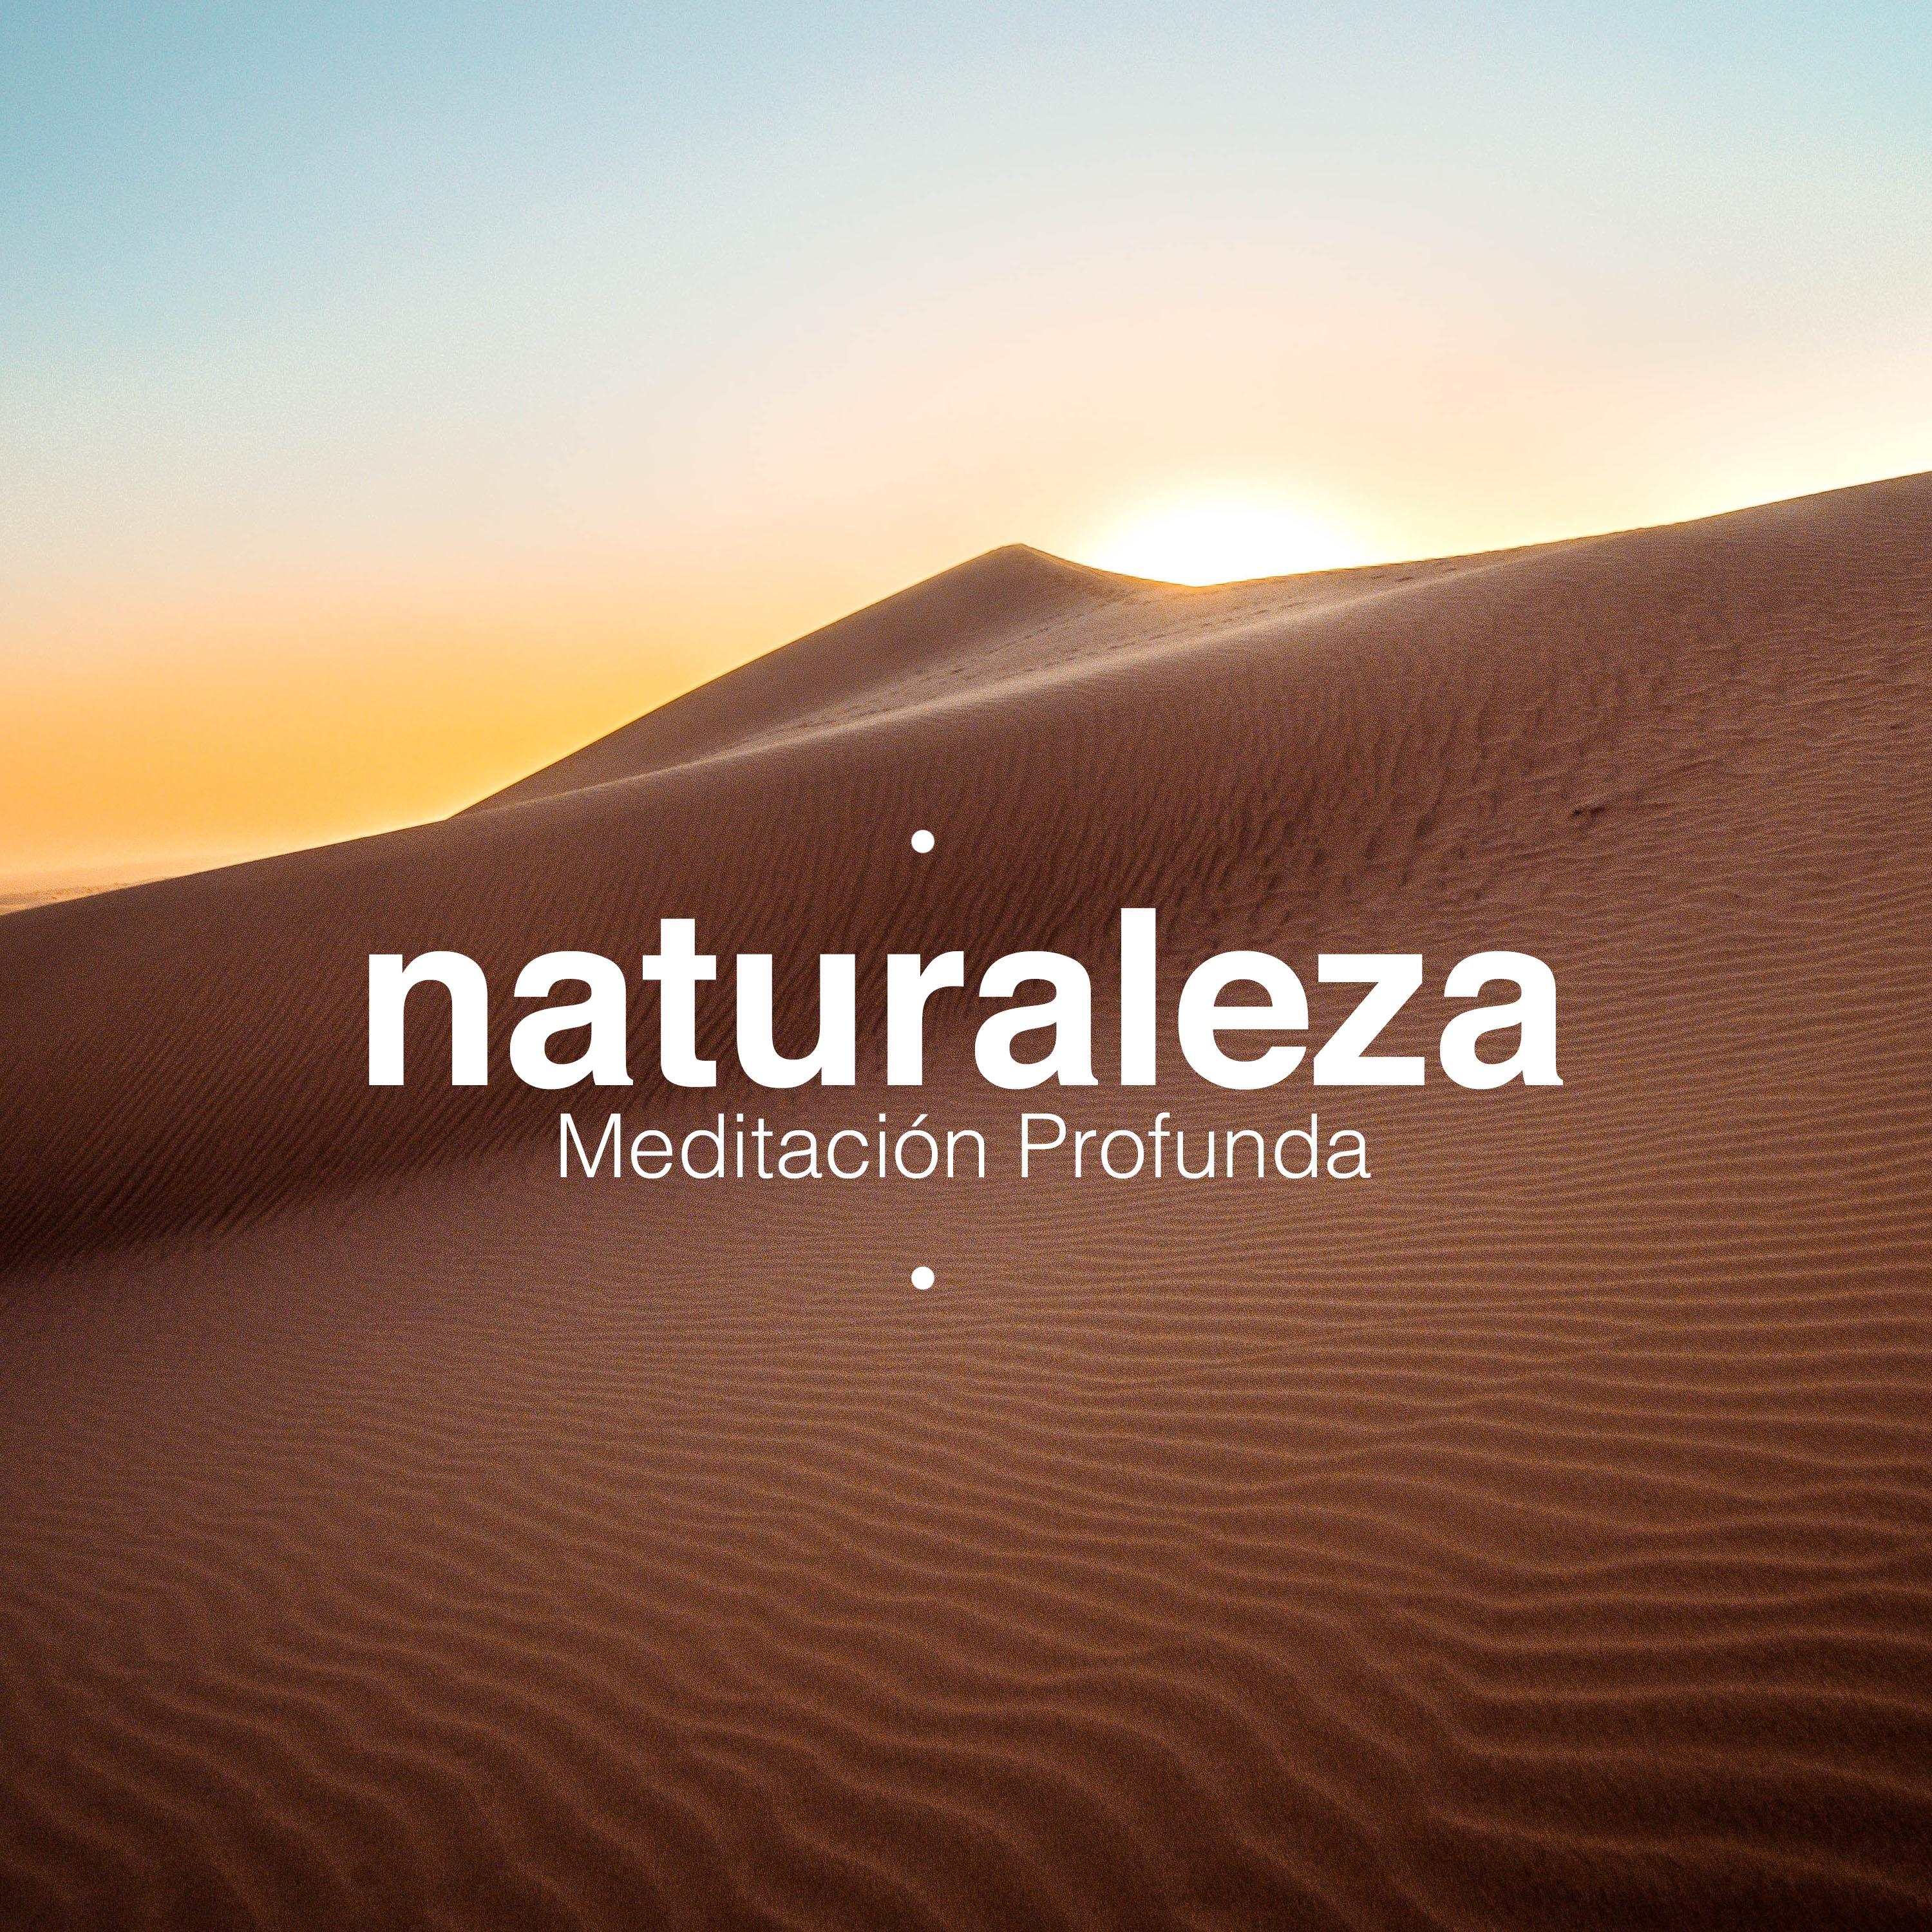 Naturaleza - Meditación Profunda, Ejercicios de Respiración, New Age